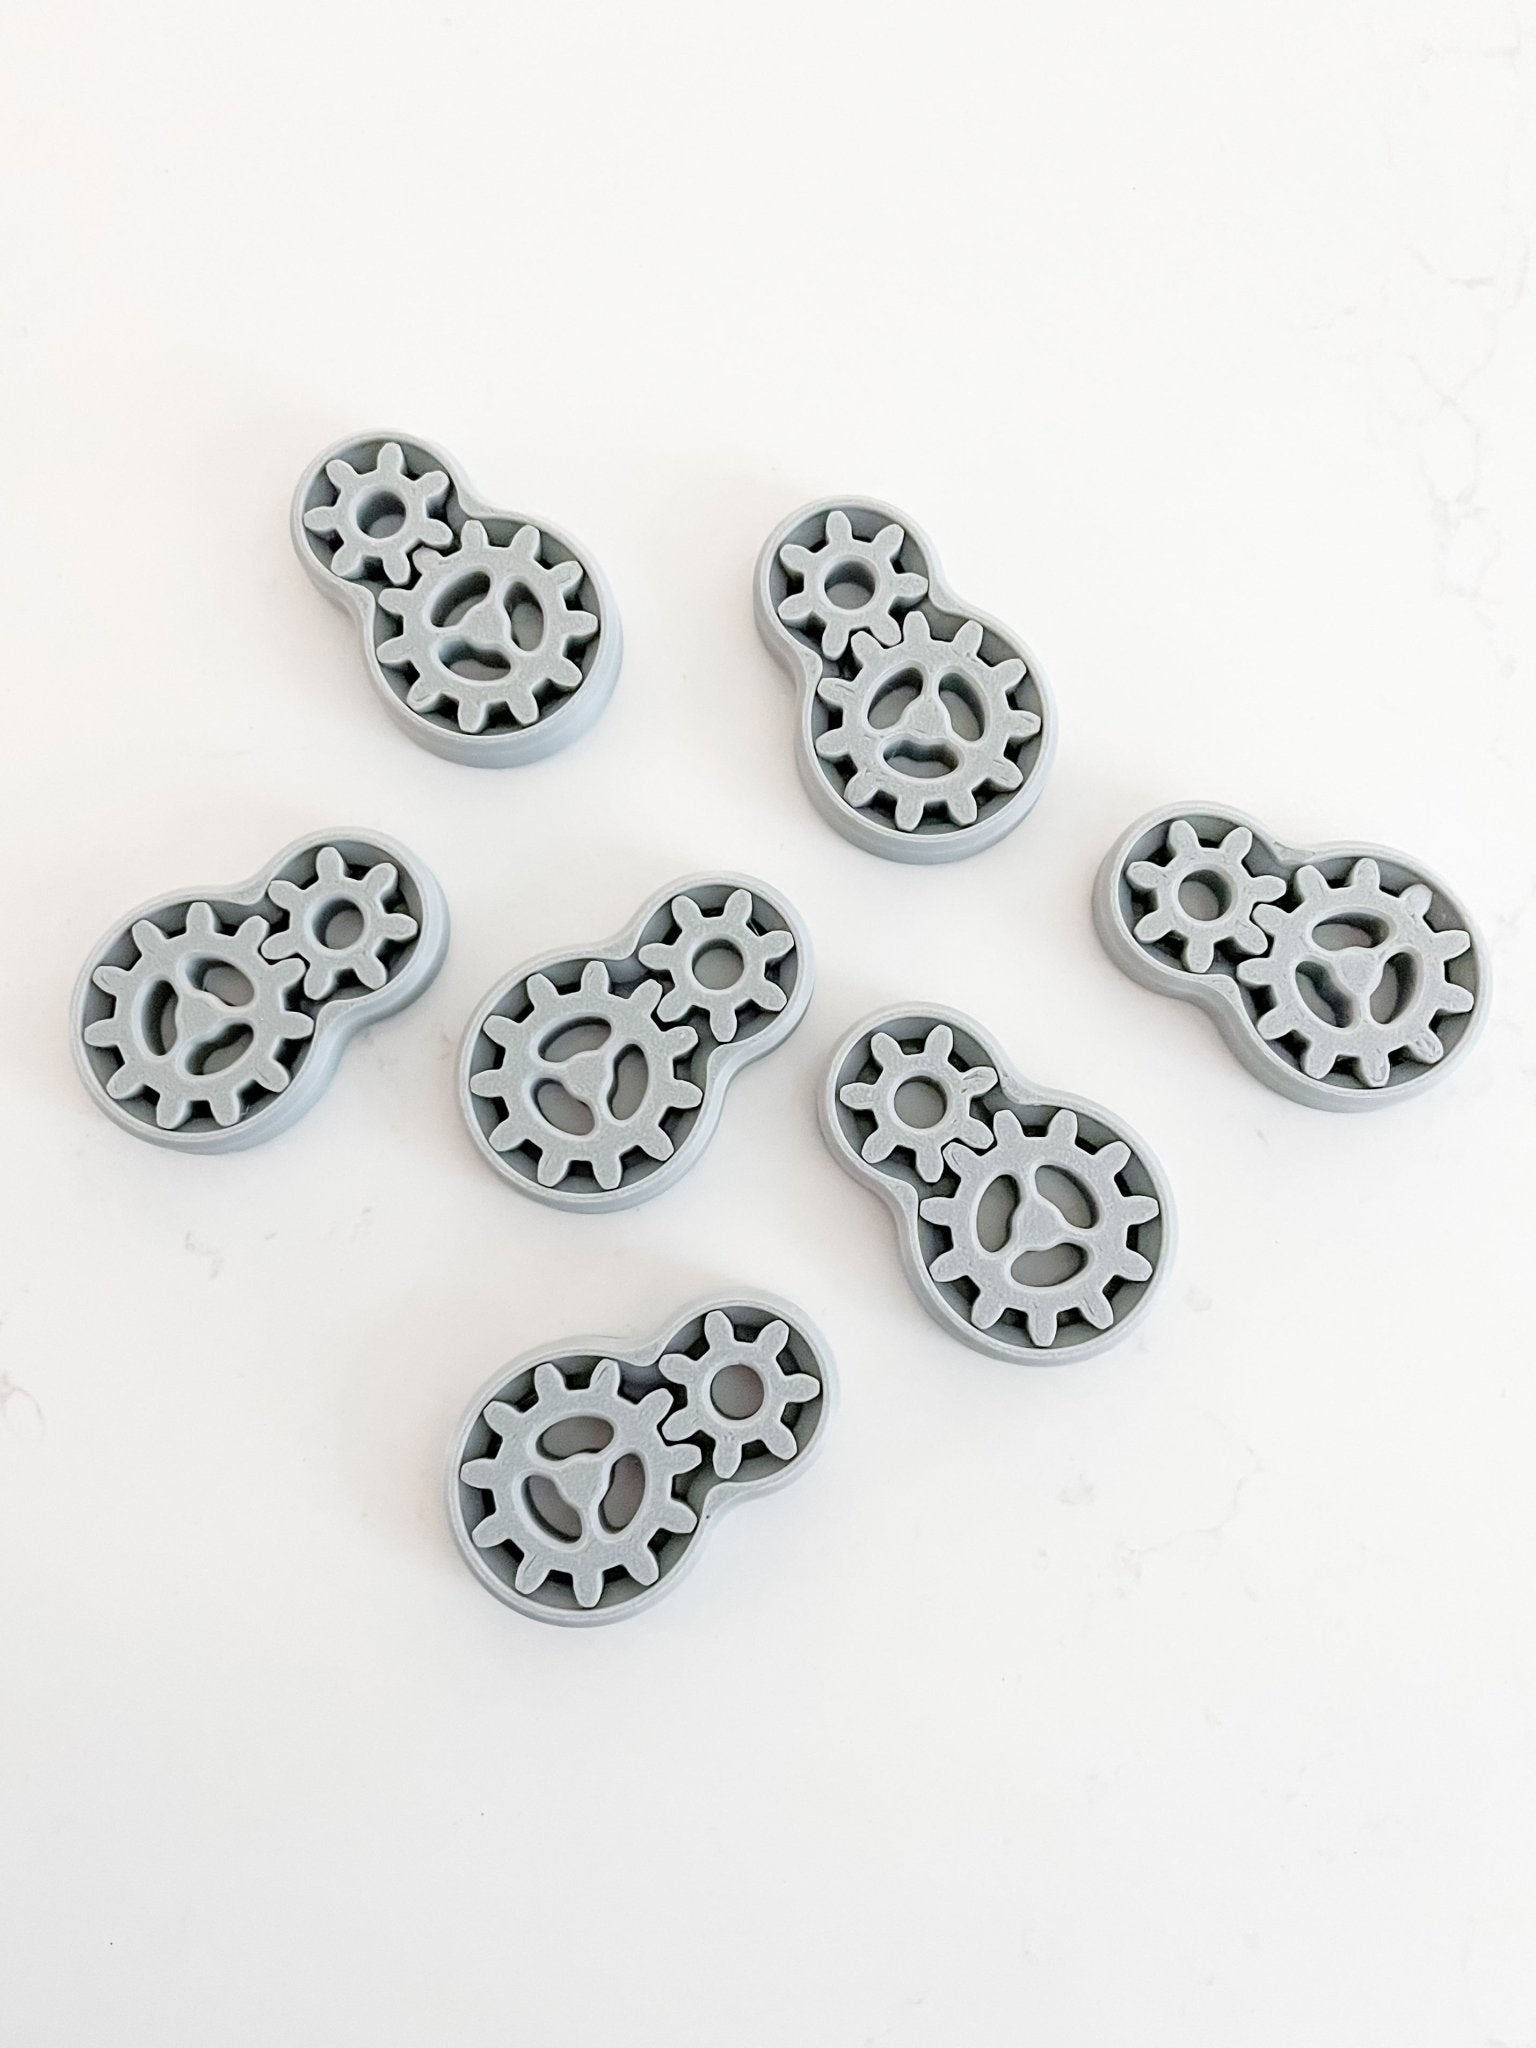 Gray Double Gear Fidget Toy - Designs by Lauren Ann